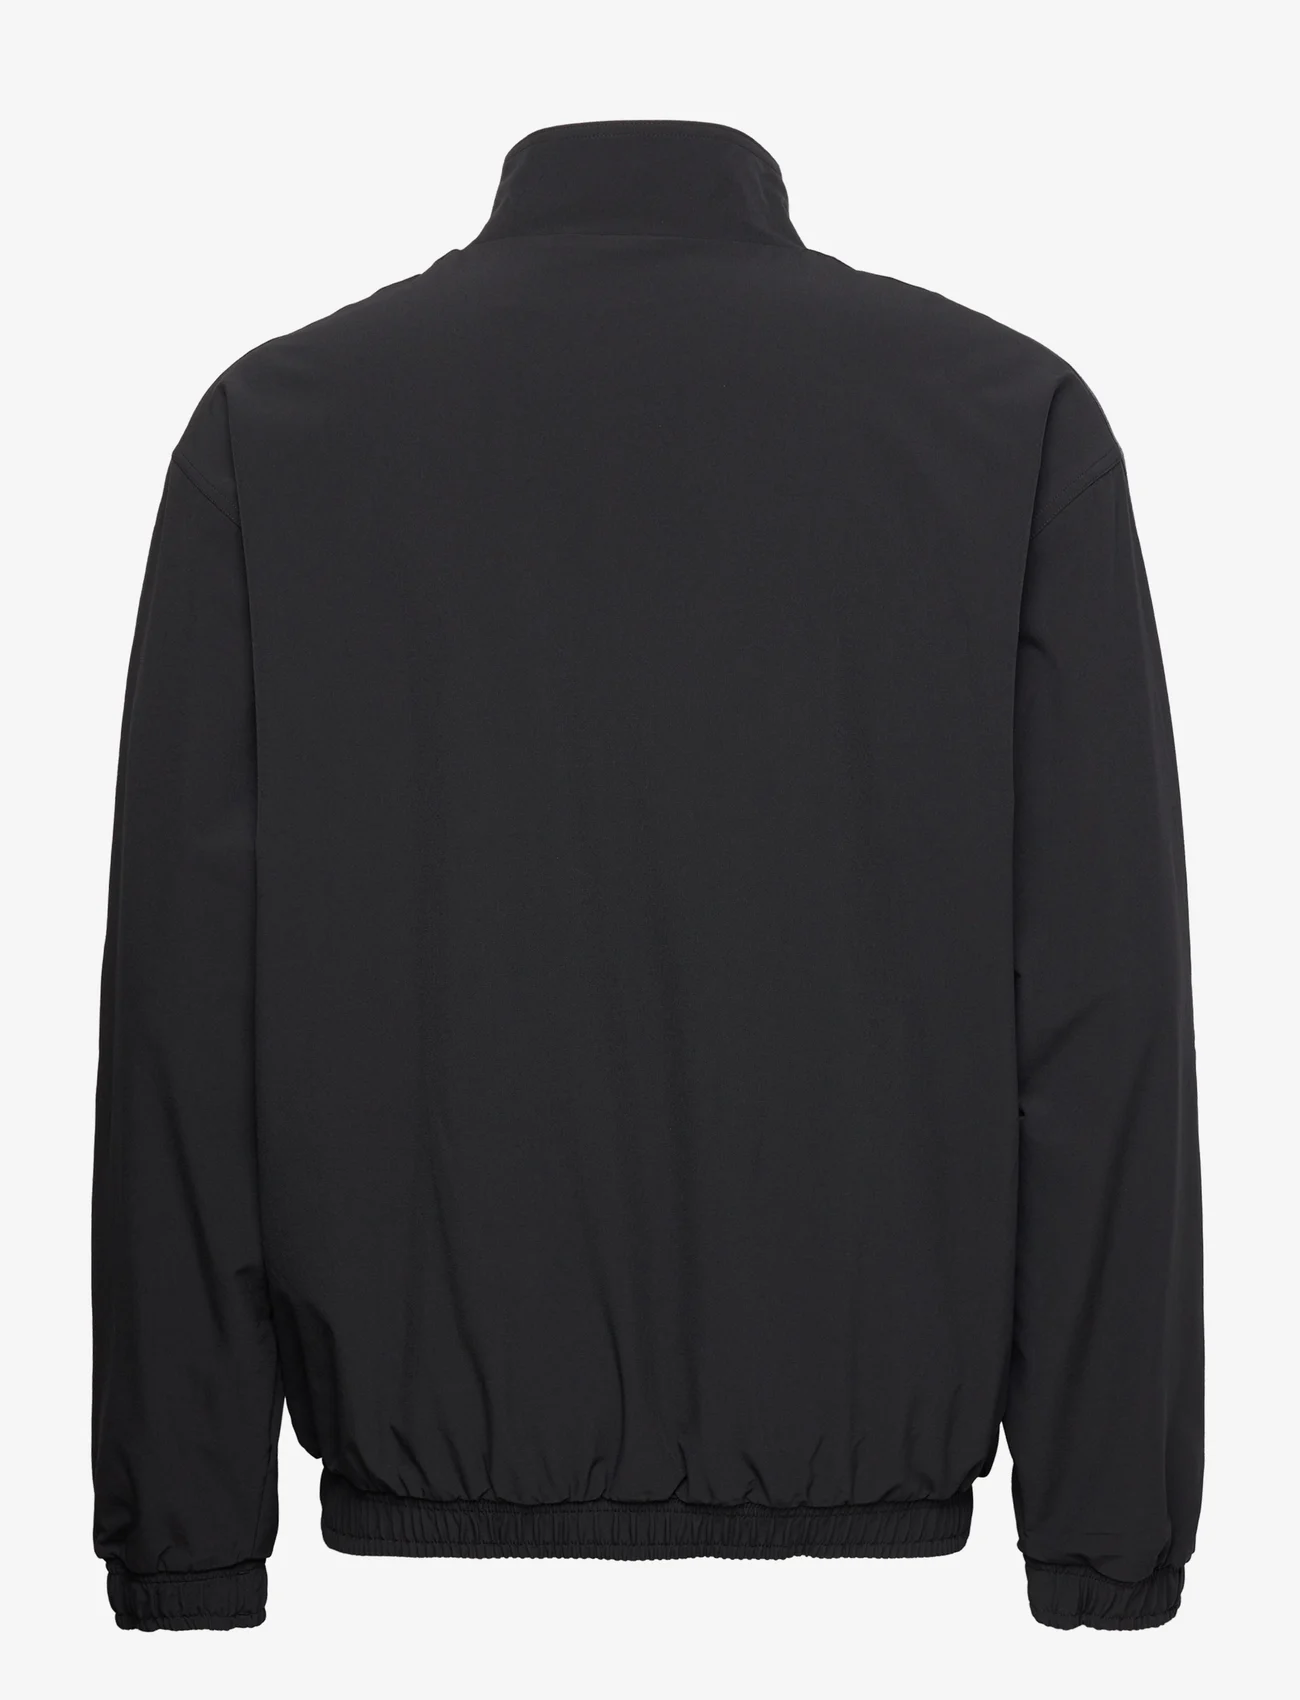 adidas Originals - ADV SHELL JKT - spring jackets - black - 1